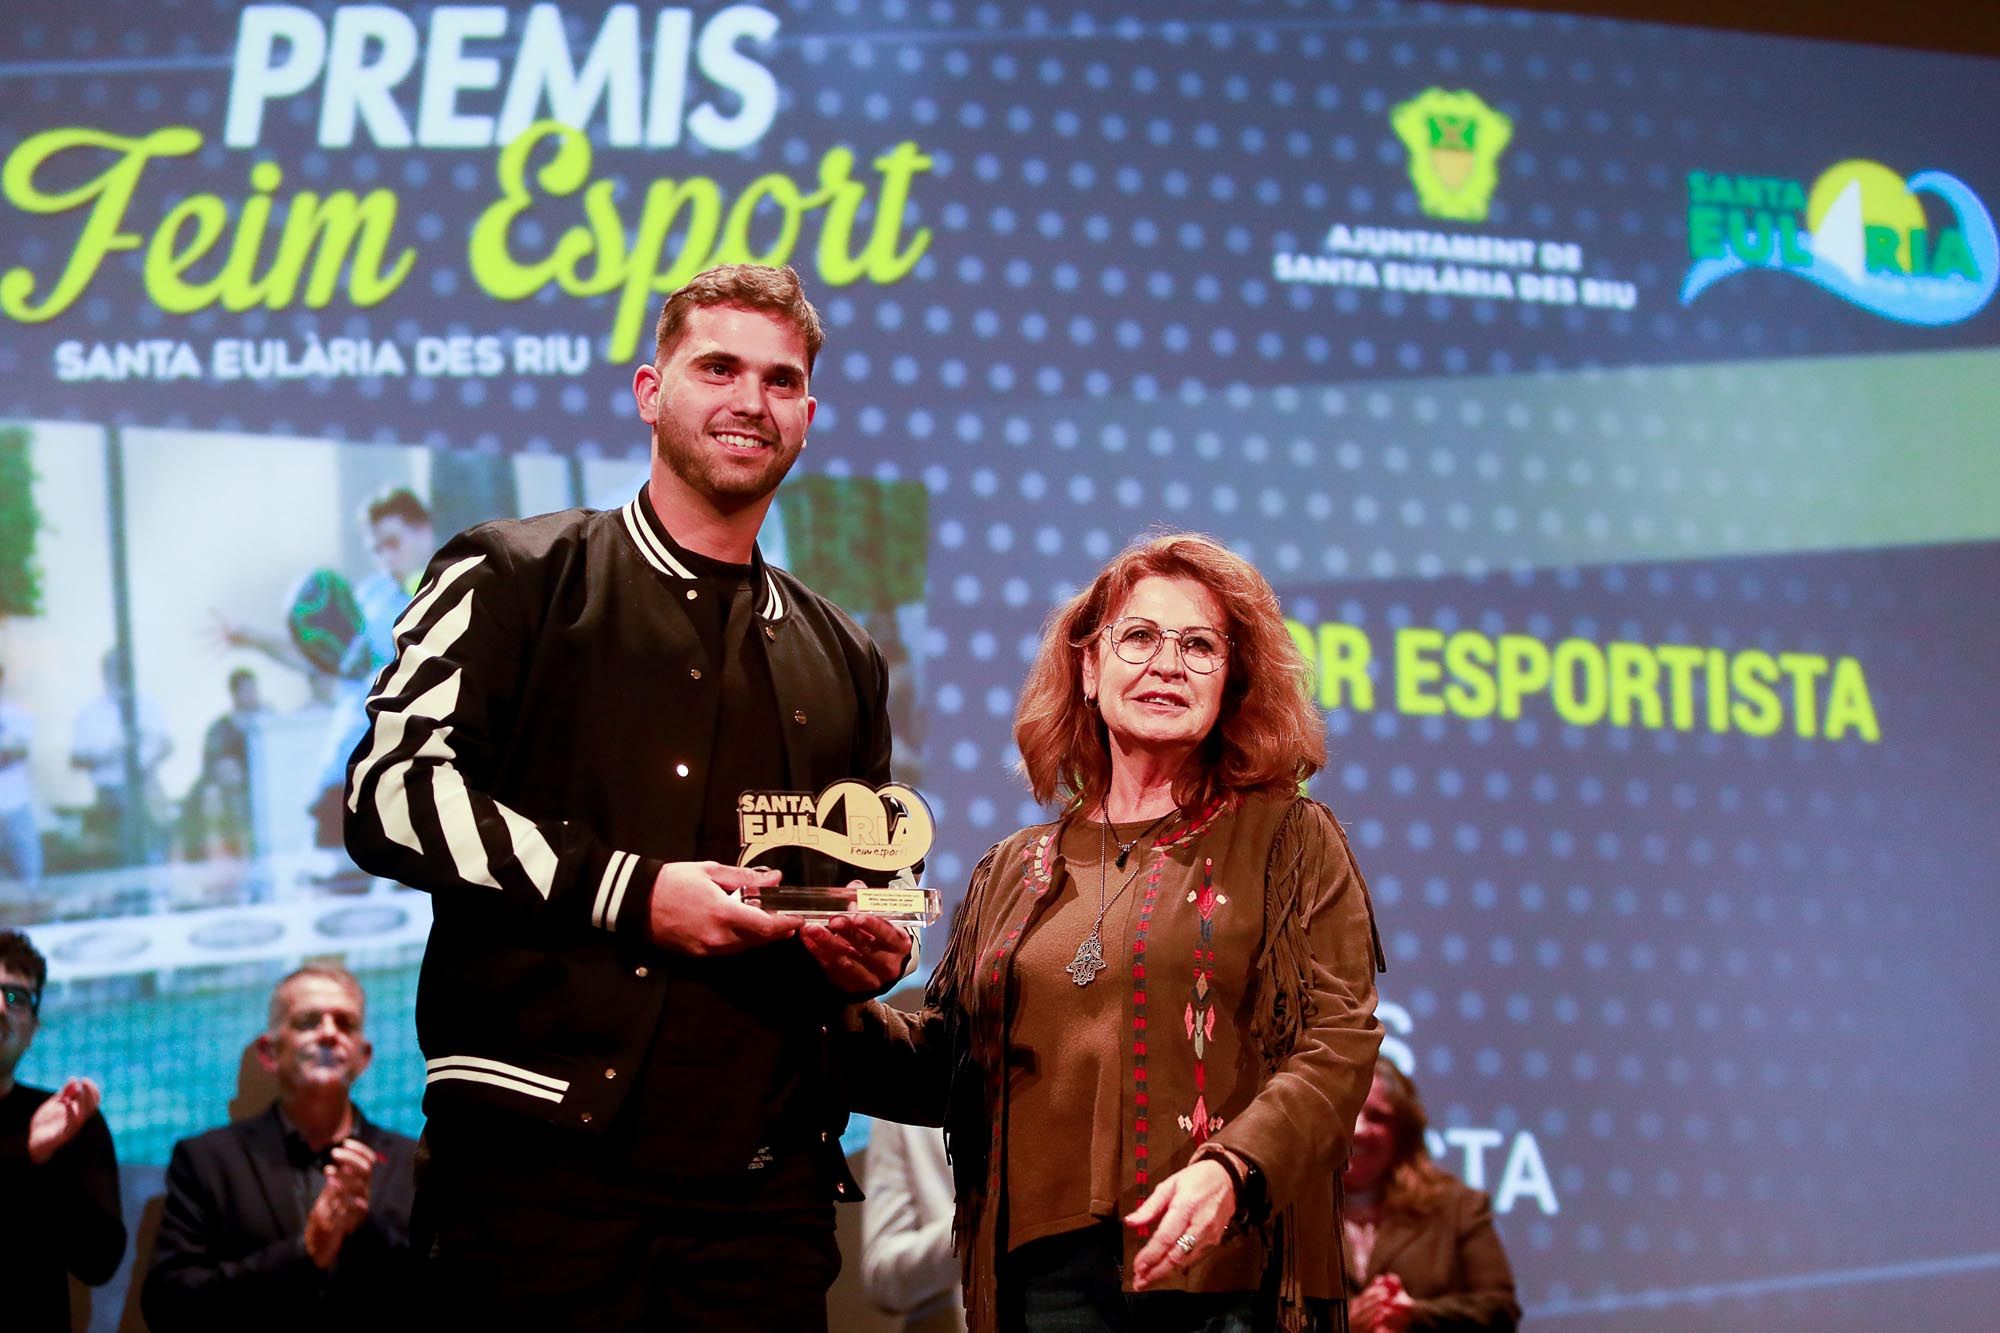 Galería de imágenes de la entrega de los Premios Feim Esport en Santa Eulària